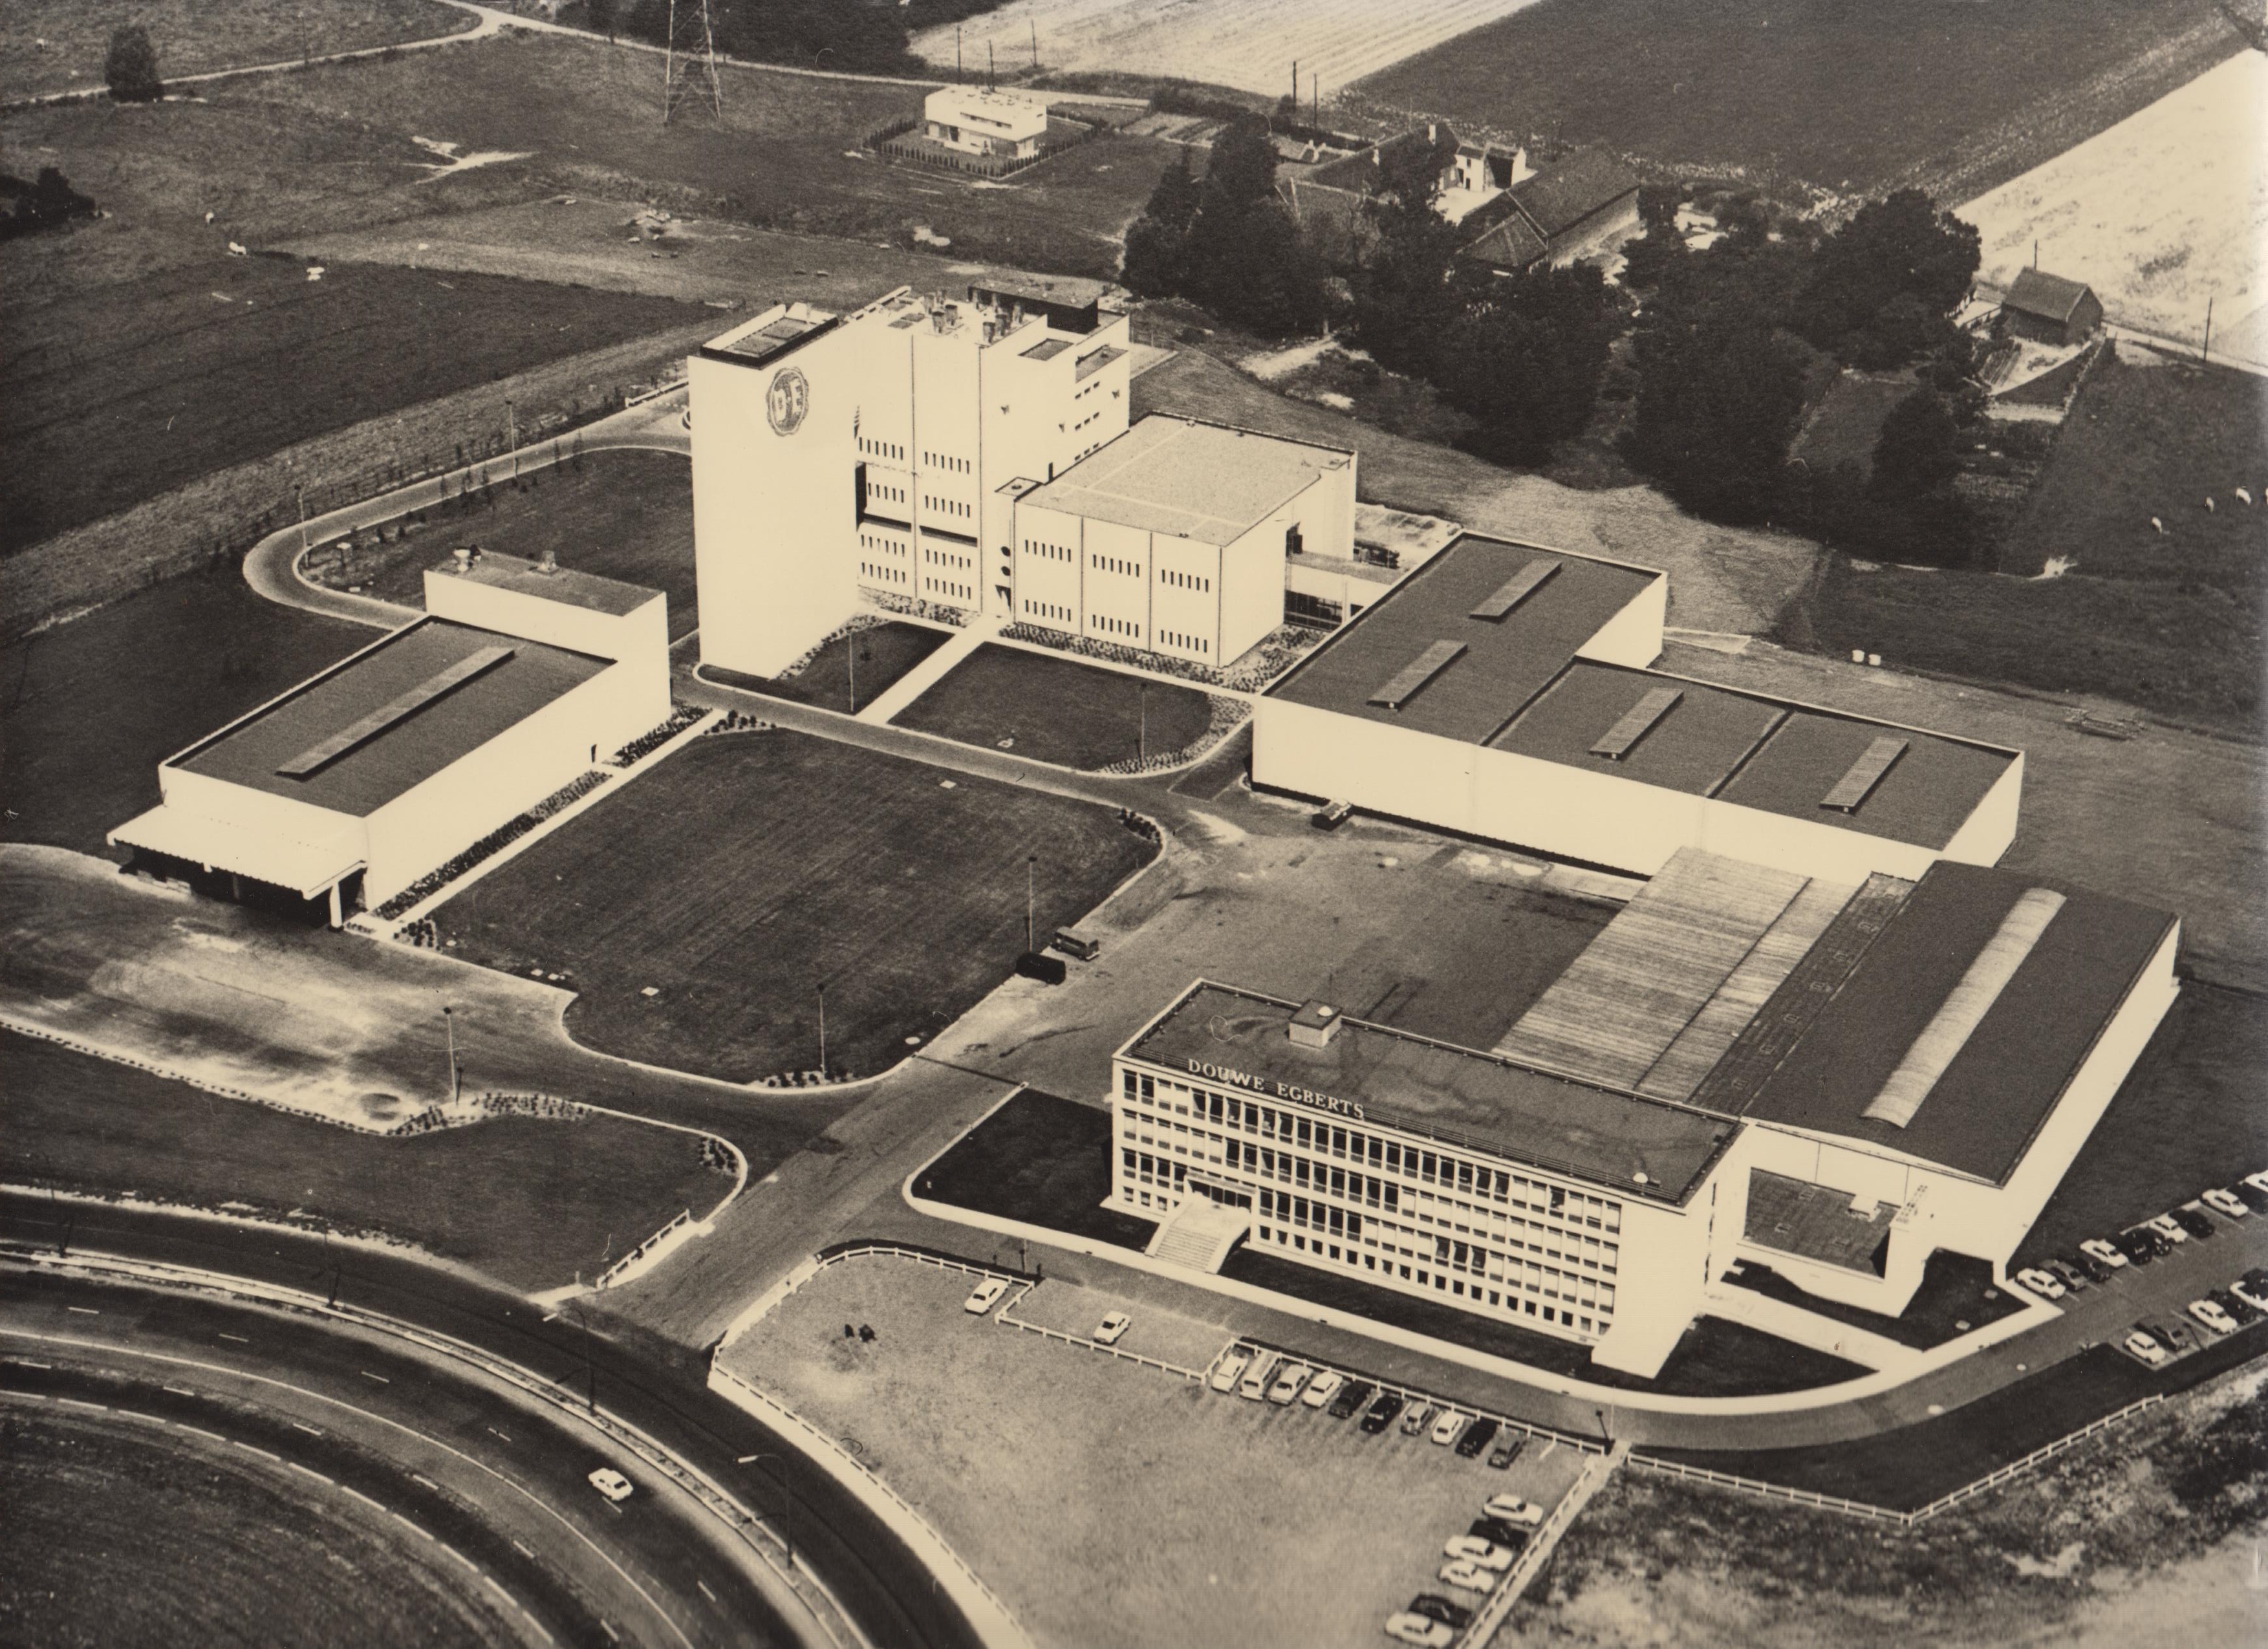 De voormalige fabriek van Douwe Egberts in Grimbergen in de jaren 1970. Collectie Jacobs Douwe Egberts, Brussel.